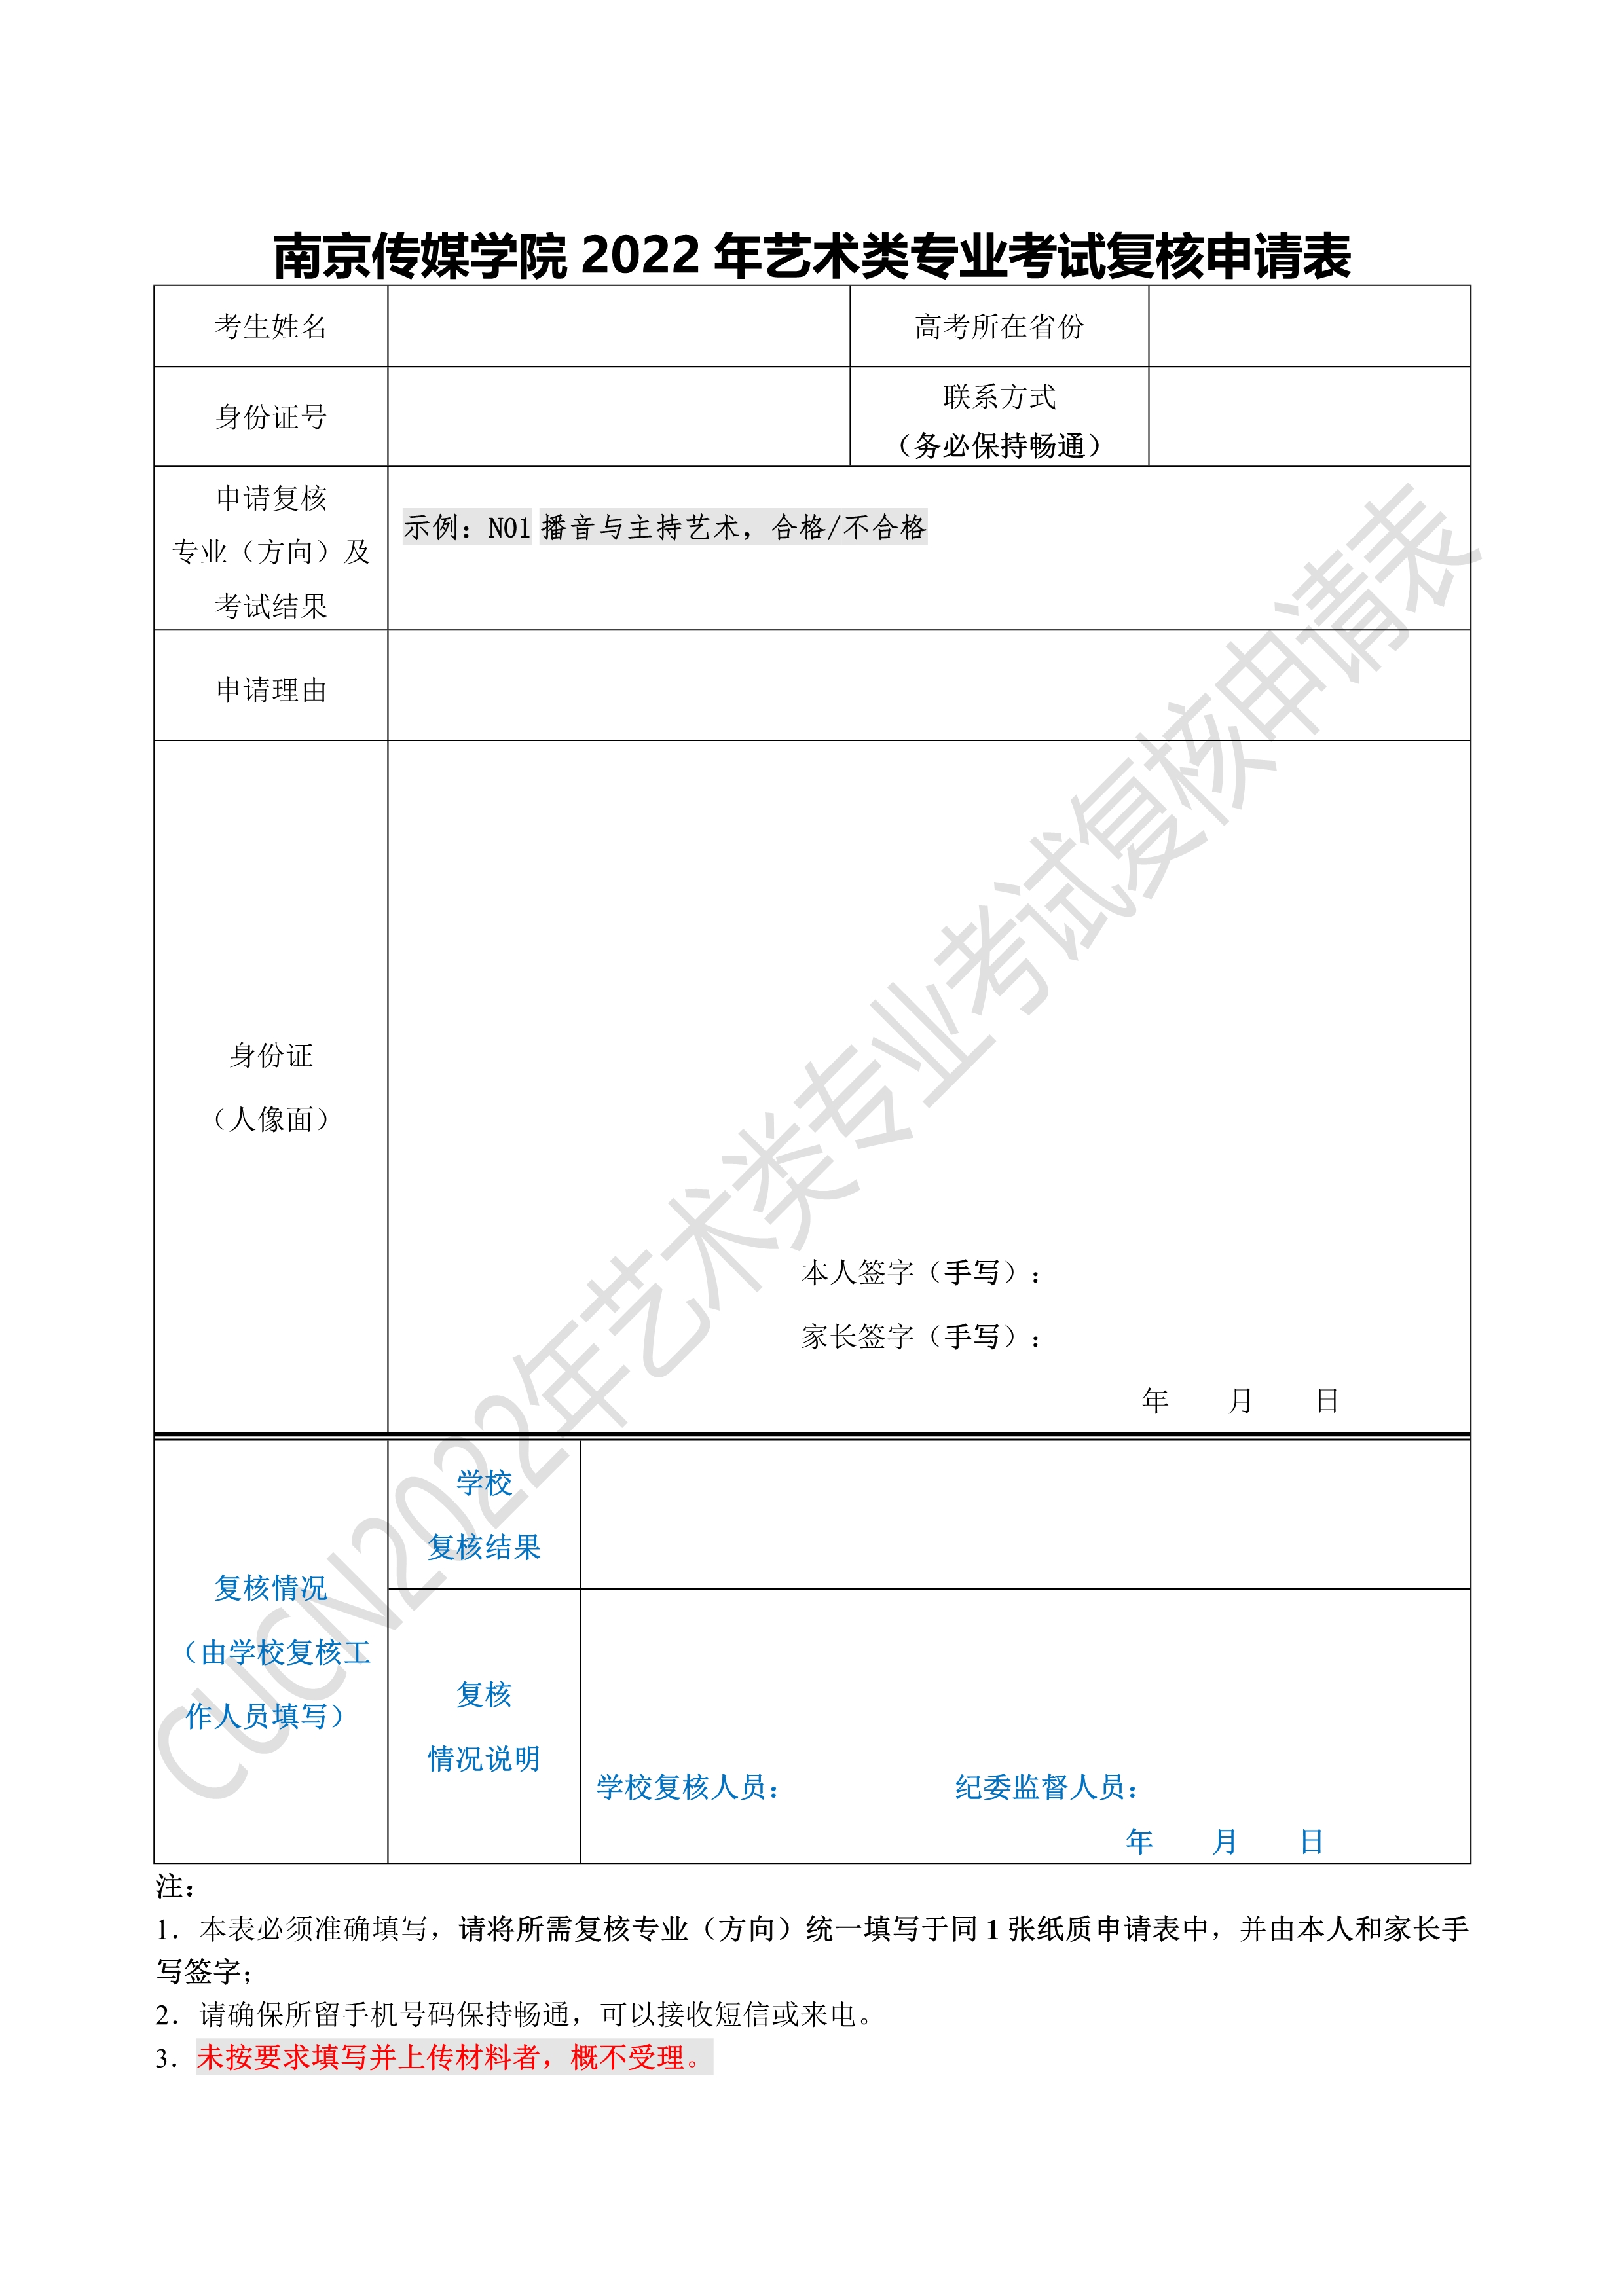 附件：南京传媒学院2022年艺术类专业考试复核申请表_1.jpg